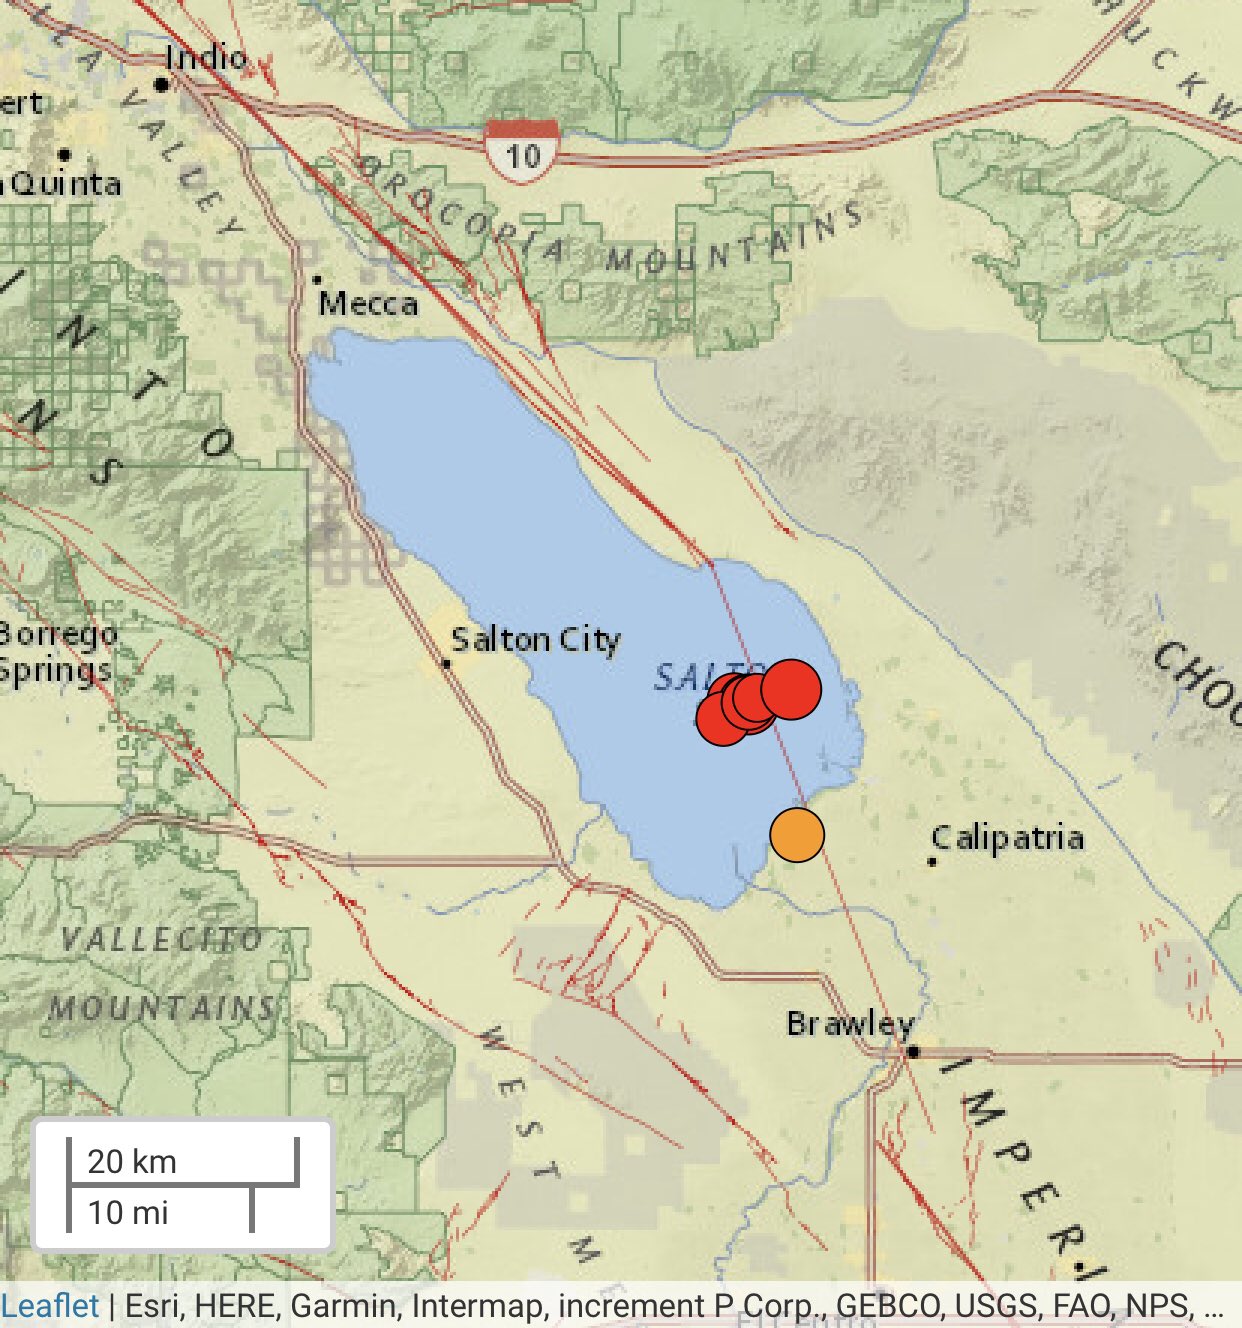 USGS advierte: enjambre sísmico preámbulo de sismo de gran magnitud.